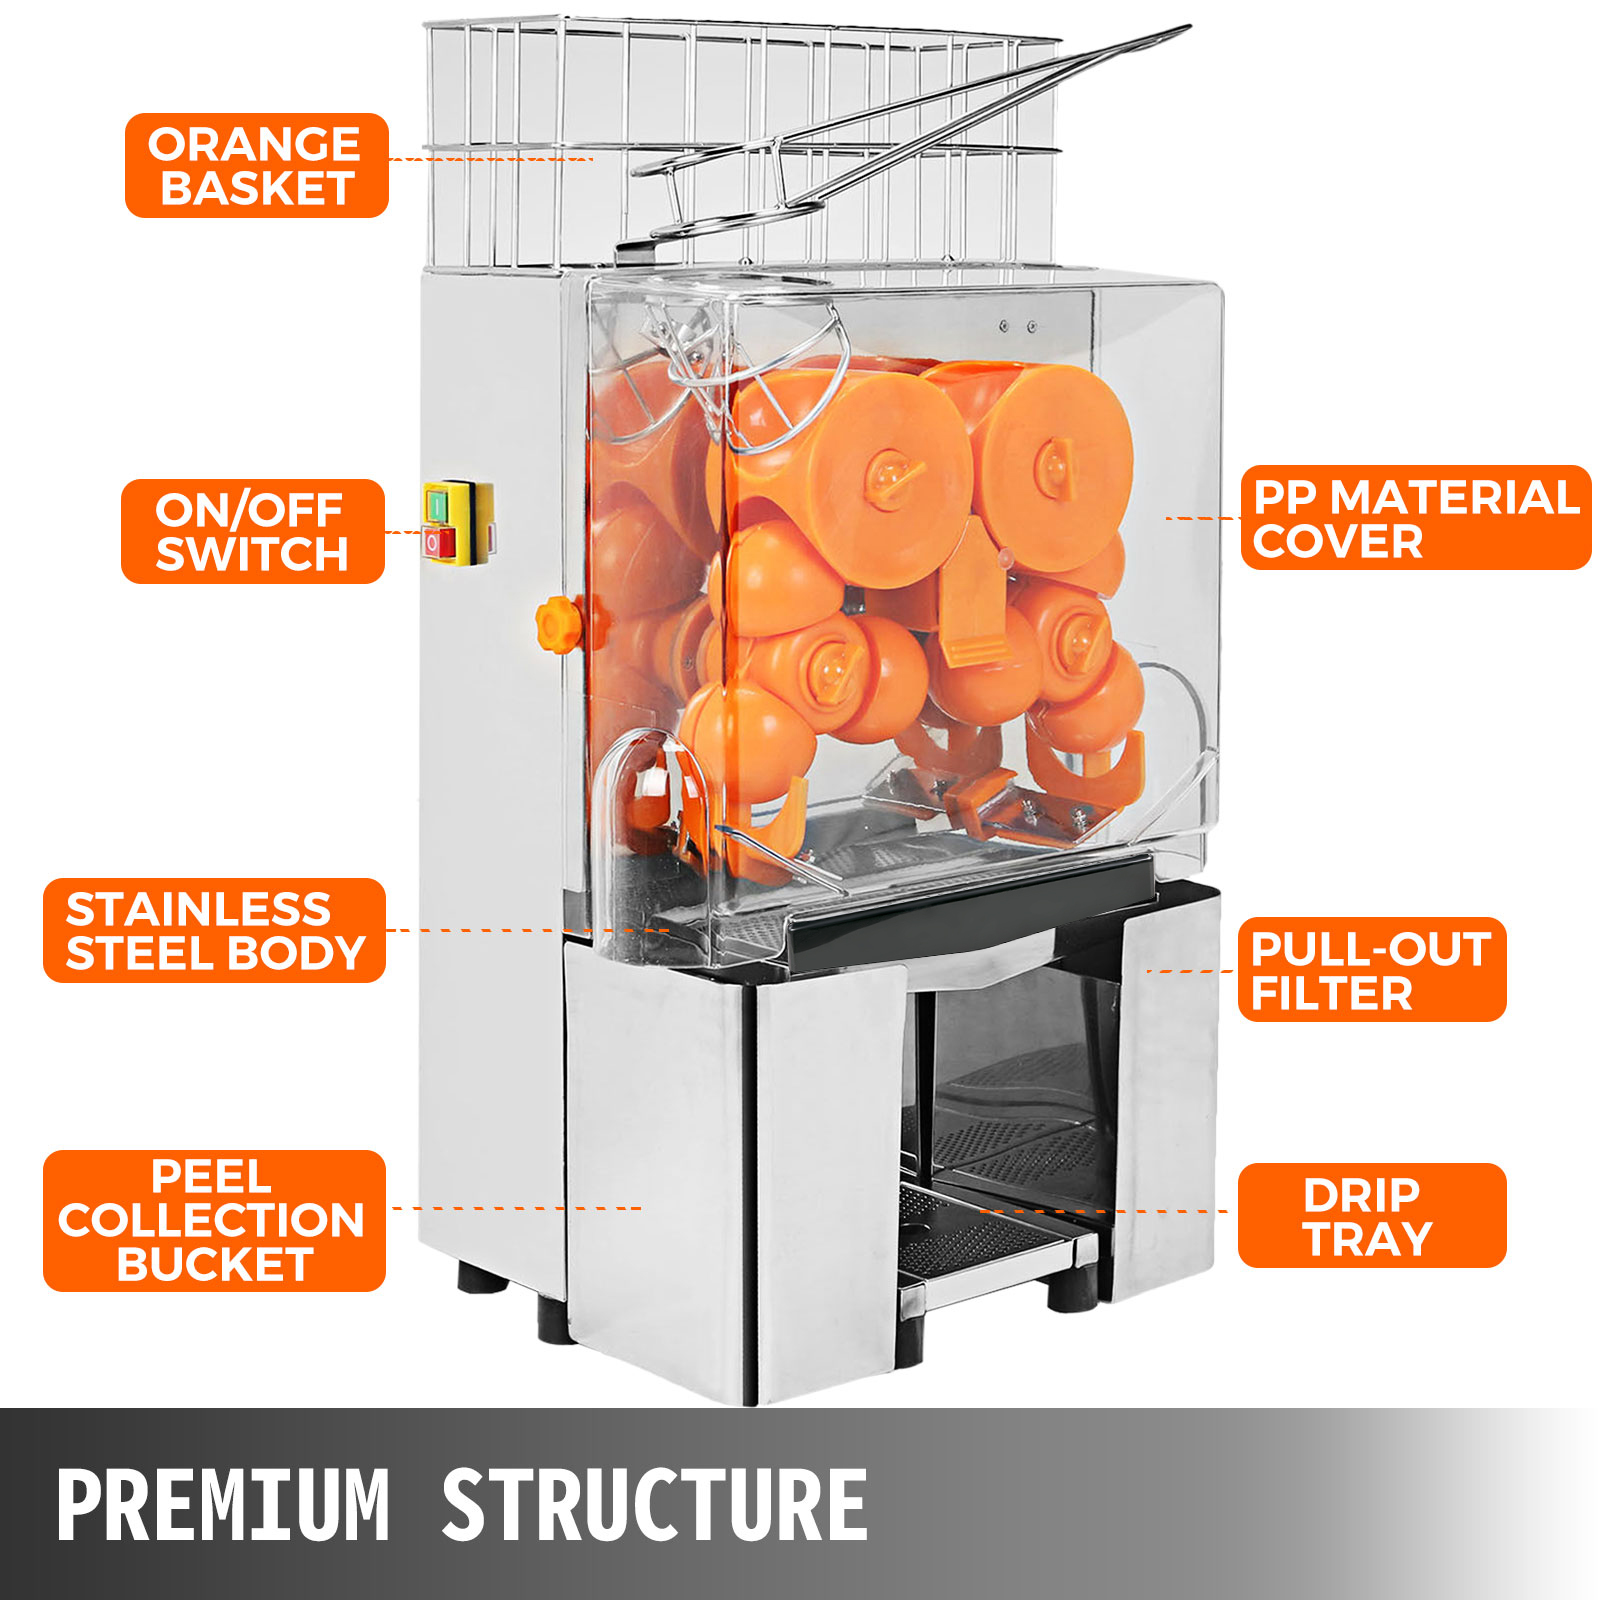 VEVOR VEVOR Exprimidor de Naranjas 120W Máquina Automática Comercial 20  naranjas / min Exprimidor Eléctrico de Naranjas 45x34x78.5cm Exprimidor  Naranjas Zumo Industrial 42 kg para jugo de rango de limón